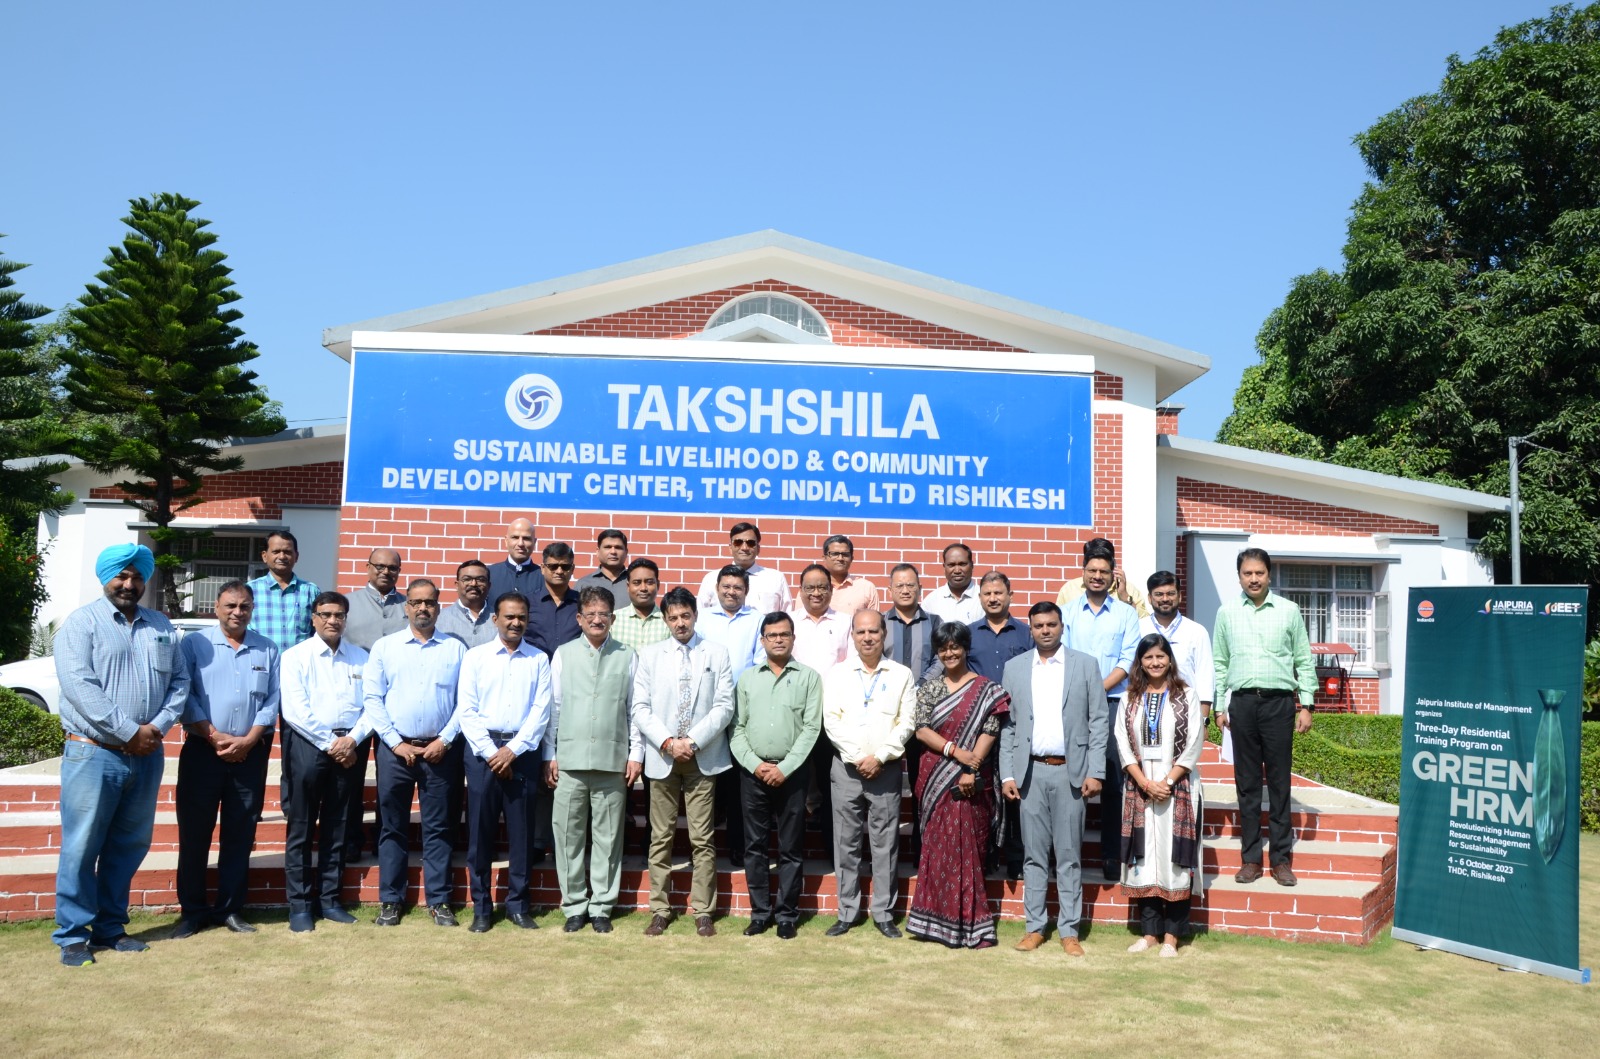 THDC-एचआरडी केंद्र, ऋषिकेश में इंडियन ऑयल कॉर्पोरेशन के अधिकारियों के लिए ‘ग्रीन एचआरएम’ प्रशिक्षण का आयोजन 